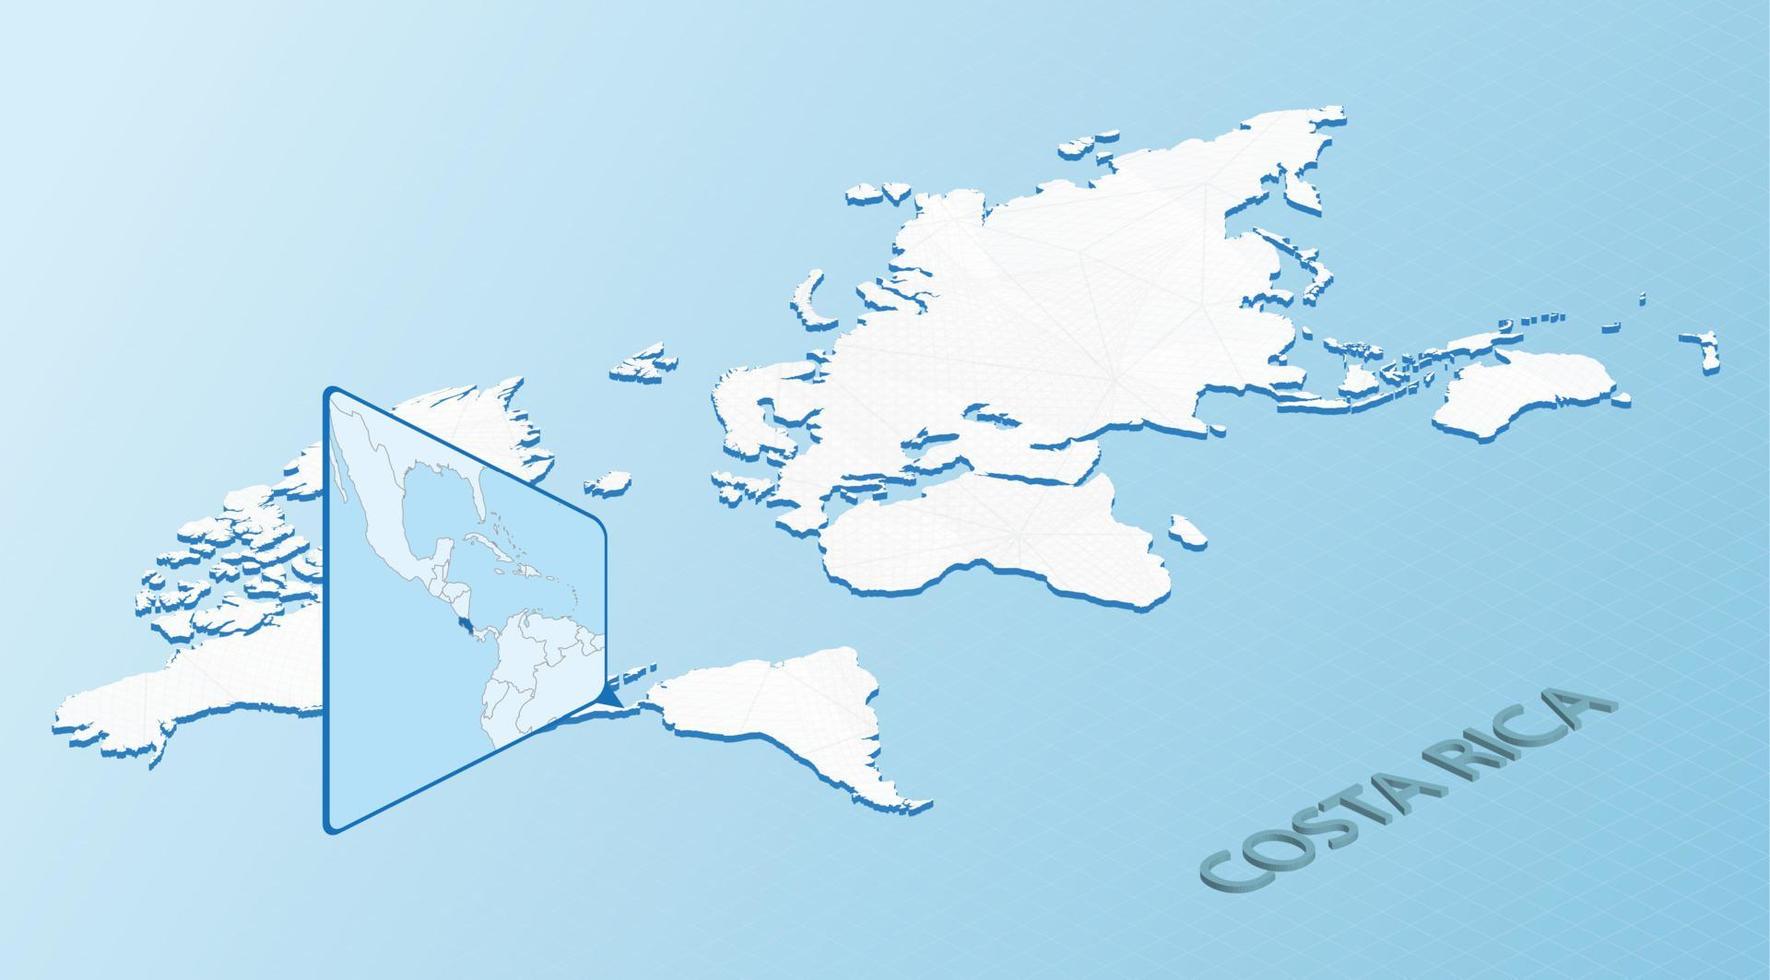 wereld kaart in isometrische stijl met gedetailleerd kaart van costa rica. licht blauw costa rica kaart met abstract wereld kaart. vector